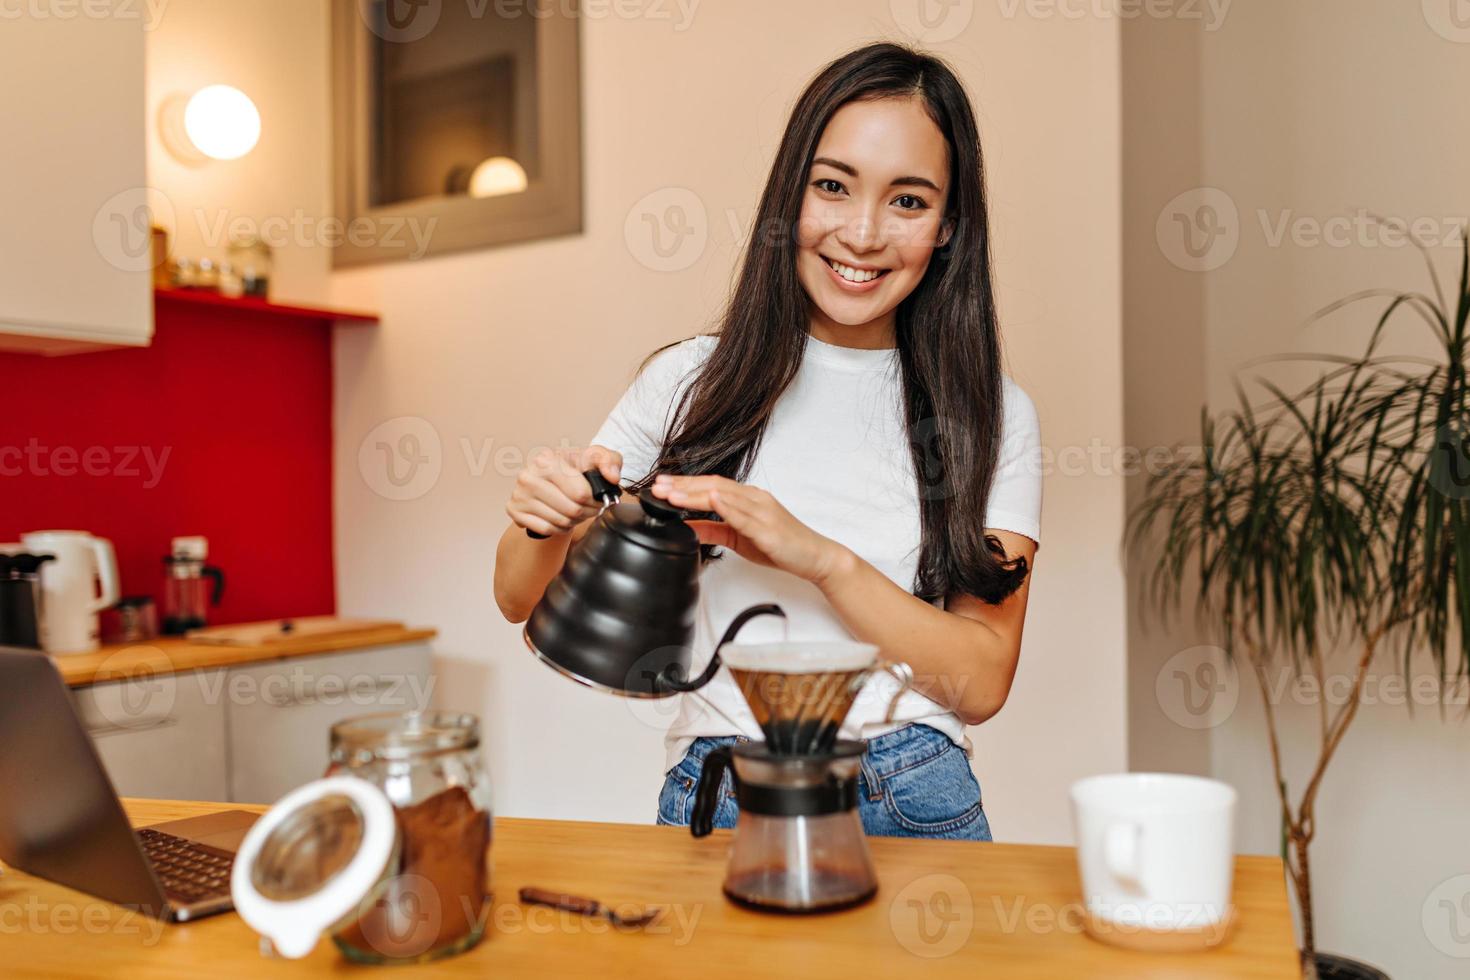 bruine ogen meisje in wit t-shirt looks in camera met glimlach en giet koken water in koffie pot foto